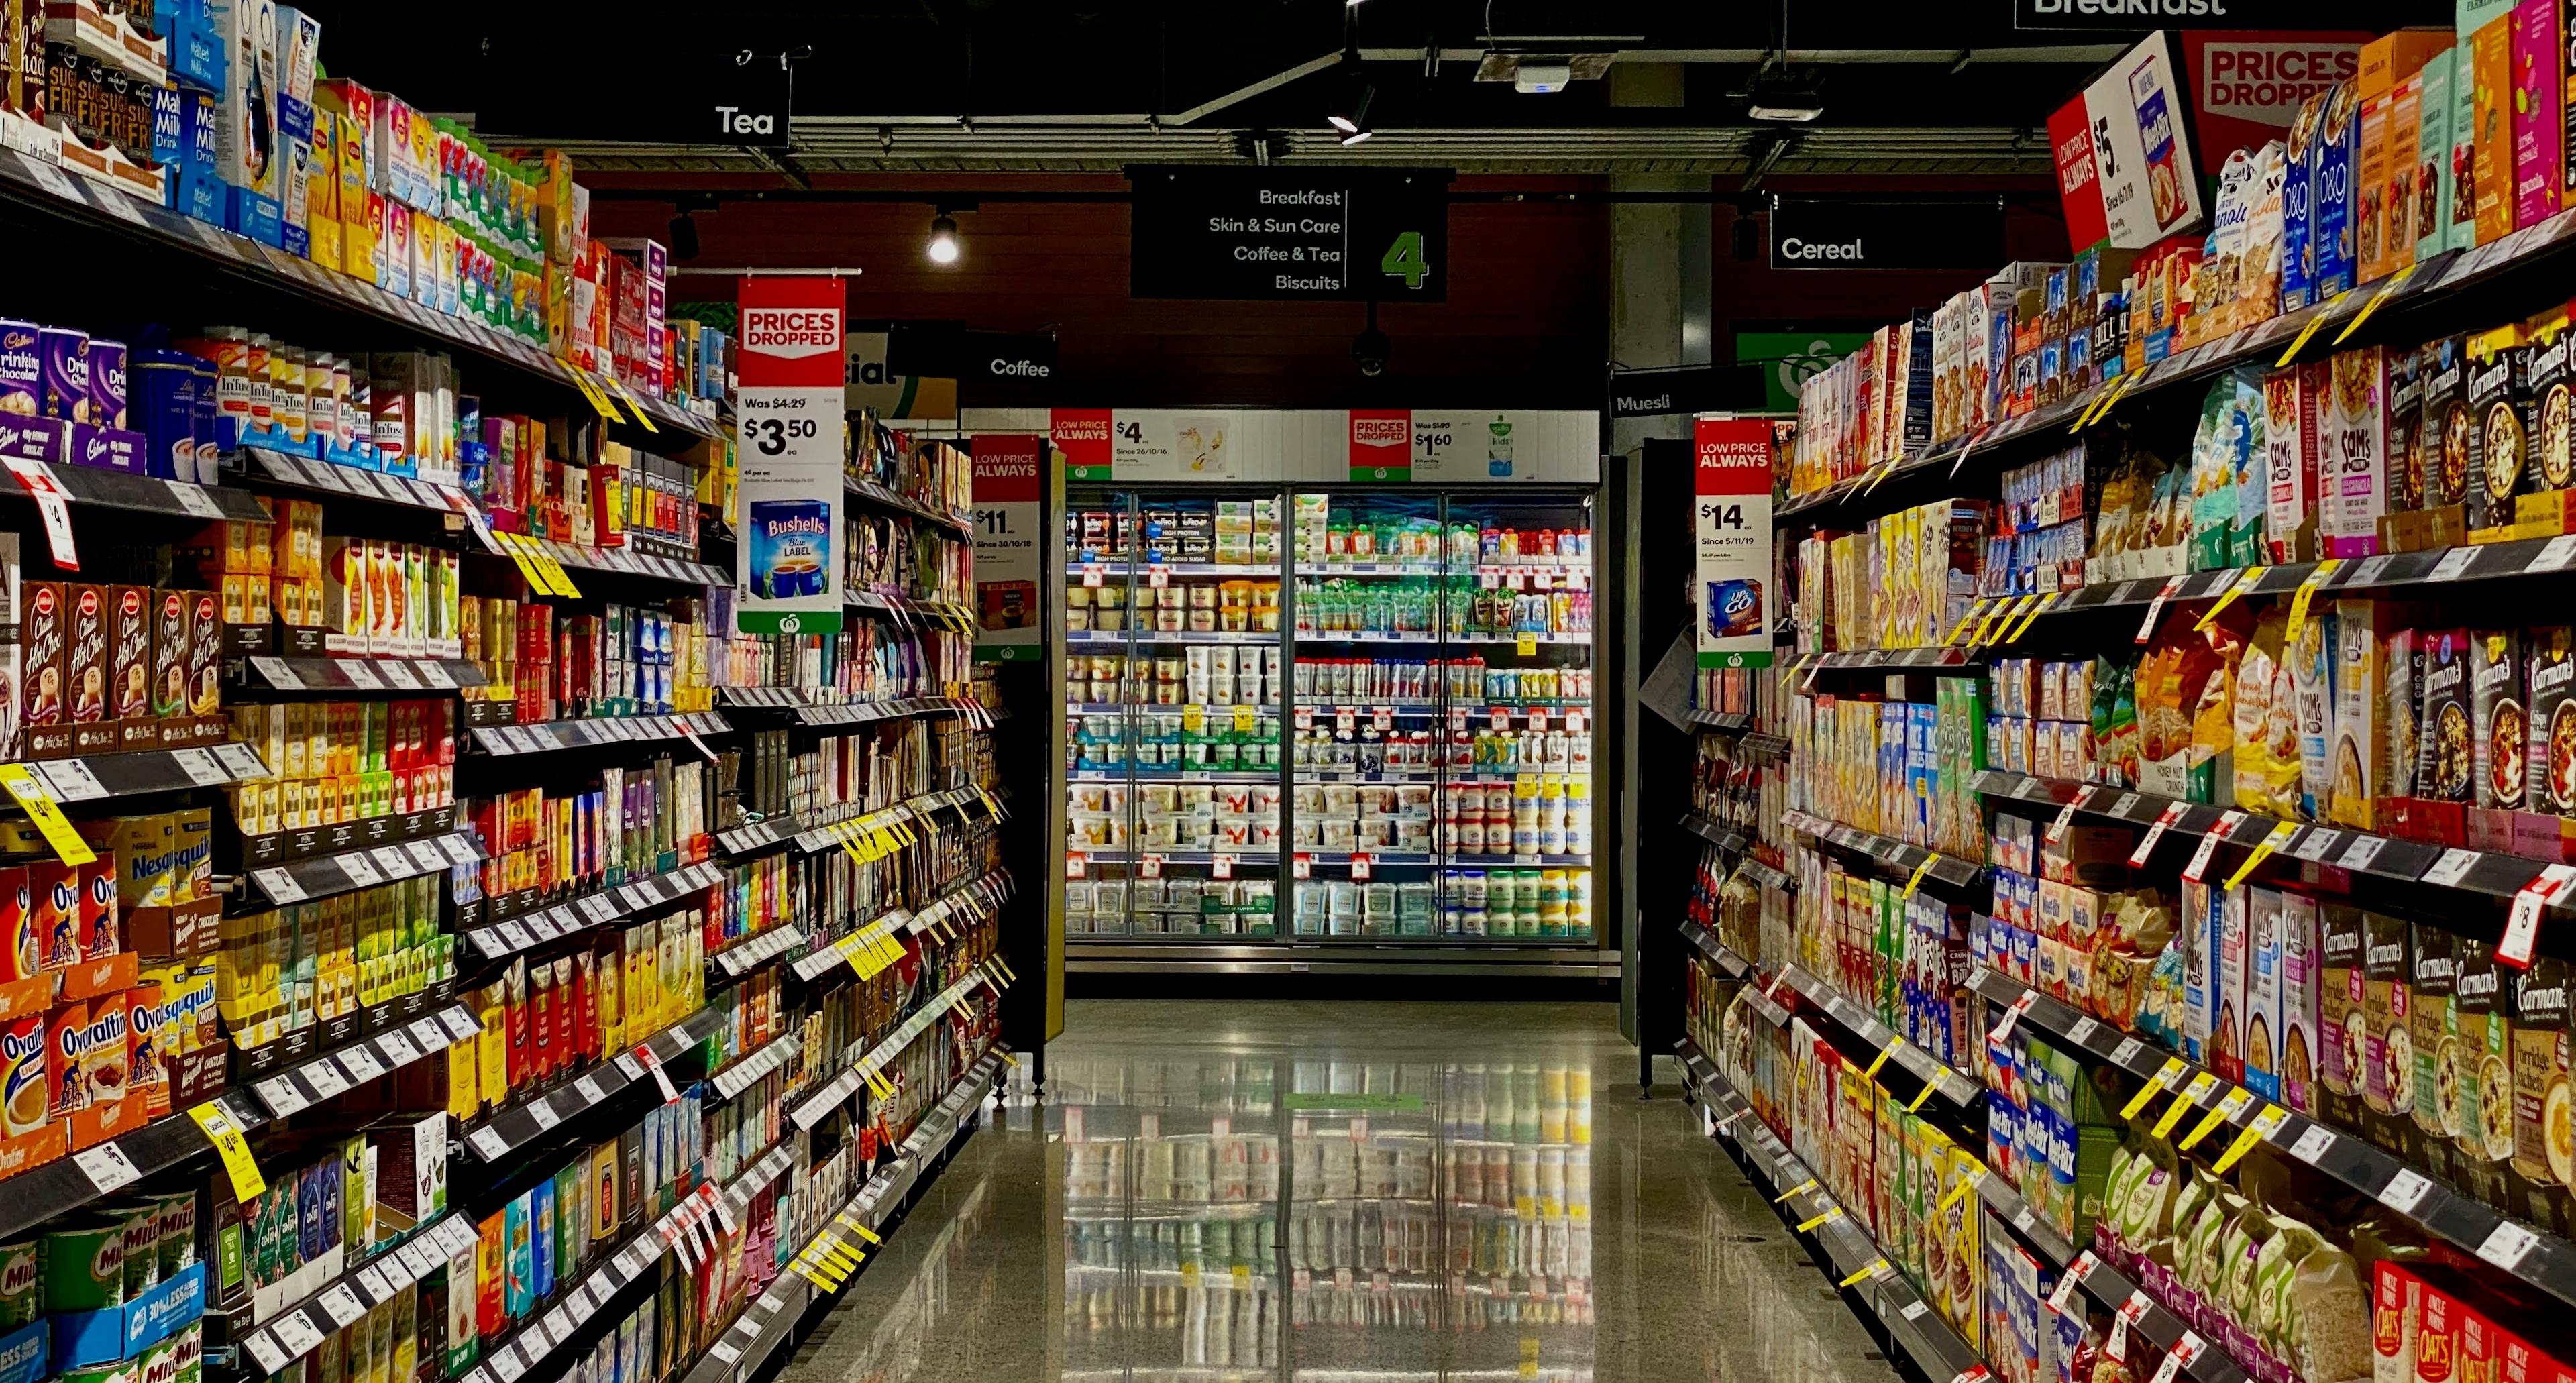 Supermarket aisle